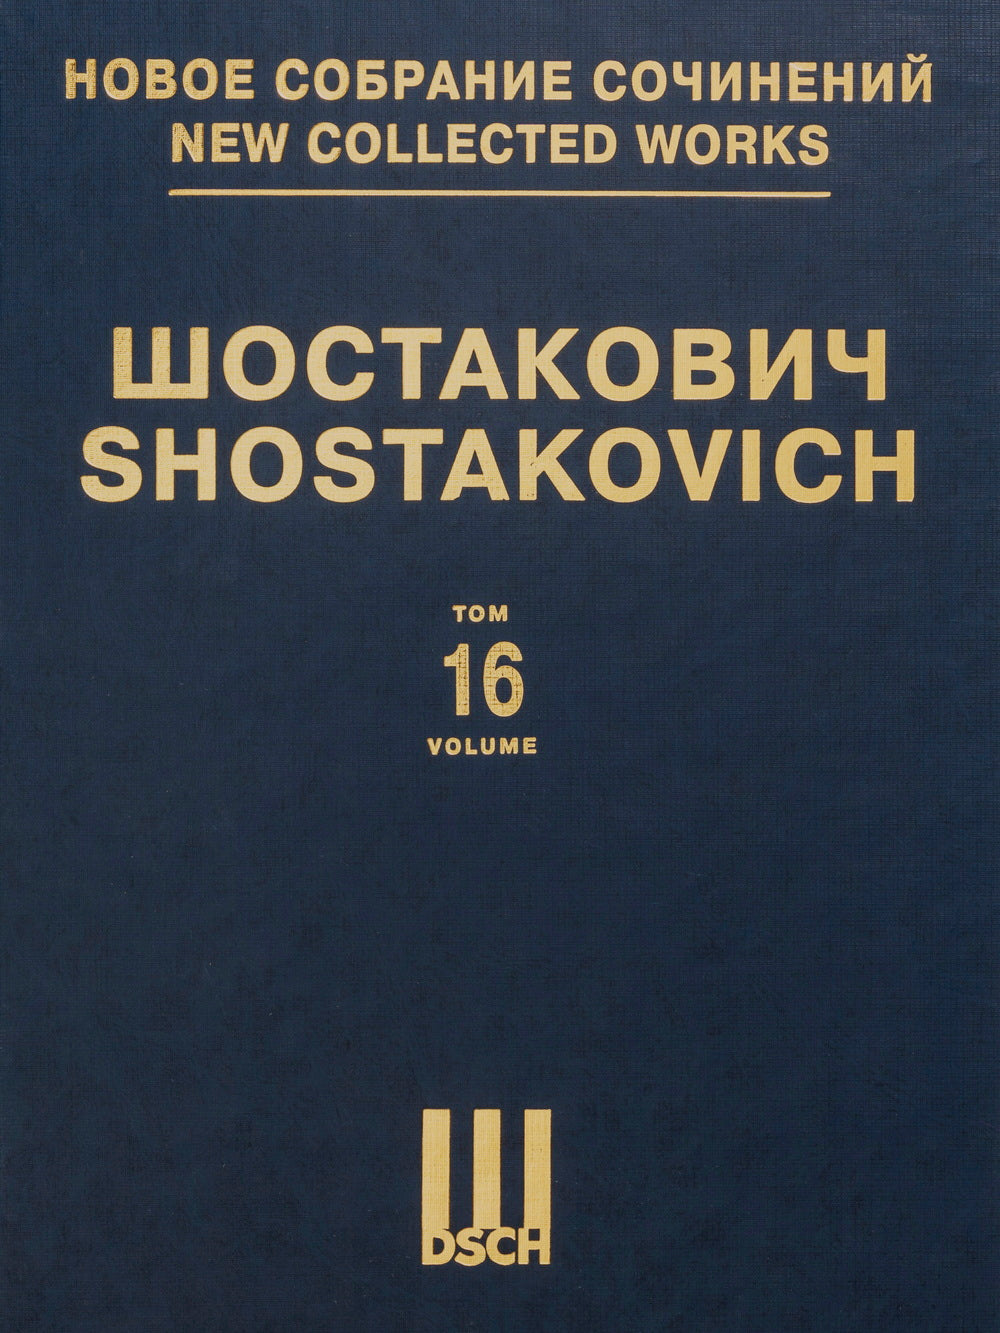 Shostakovich: Symphony No. 1, Op. 10 (arr. for piano 4-hands)